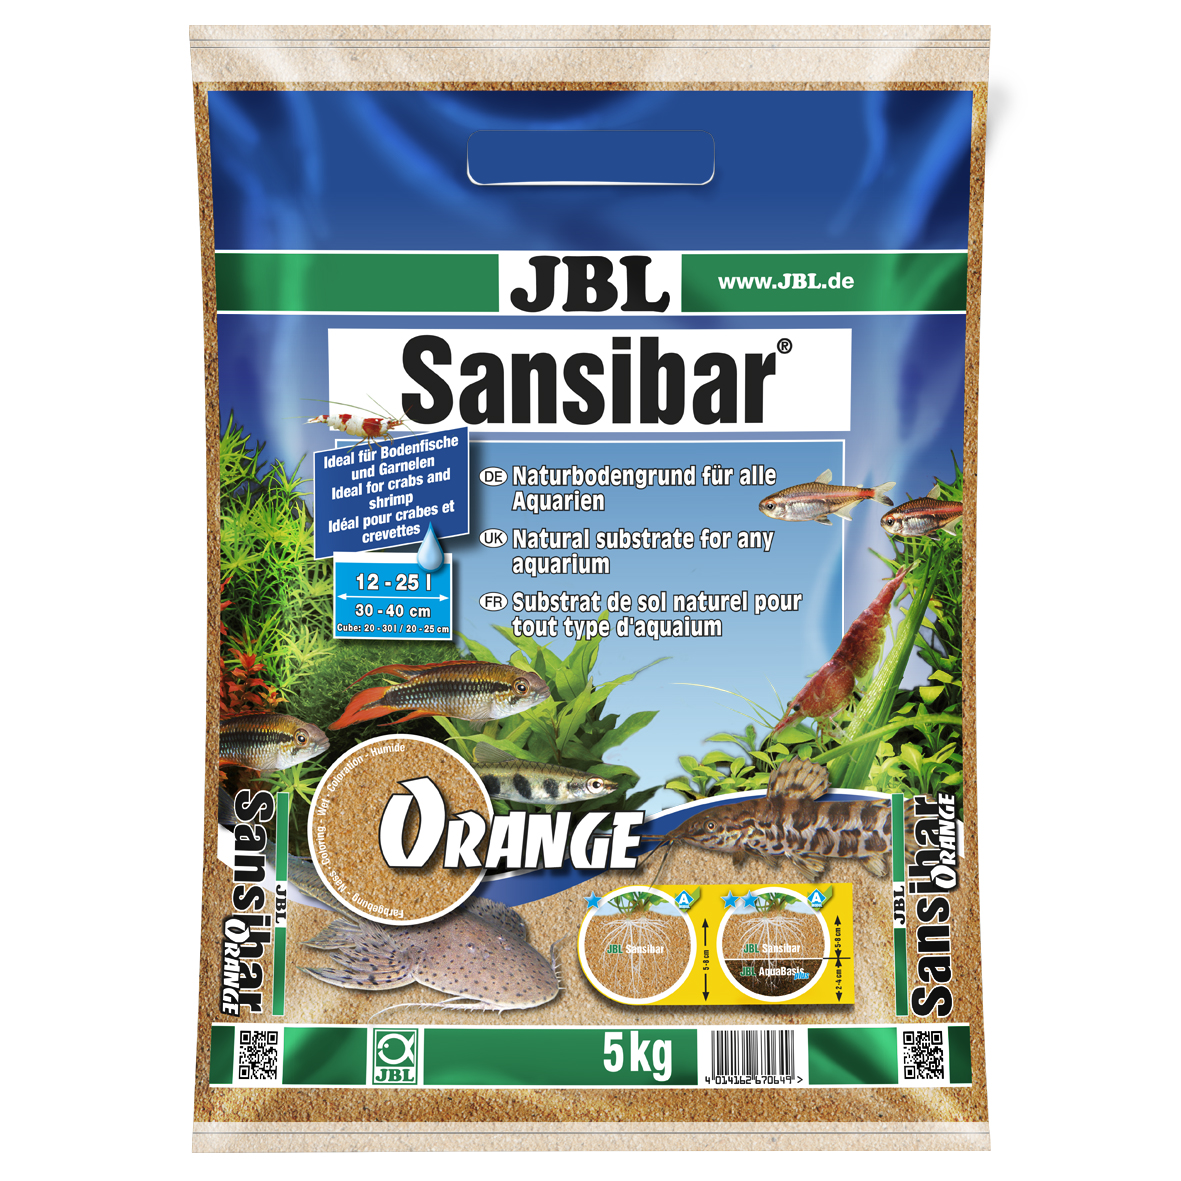 JBL GMBH & CO. KG - NEUHOFEN Sansibar ORANGE 5kg JBL